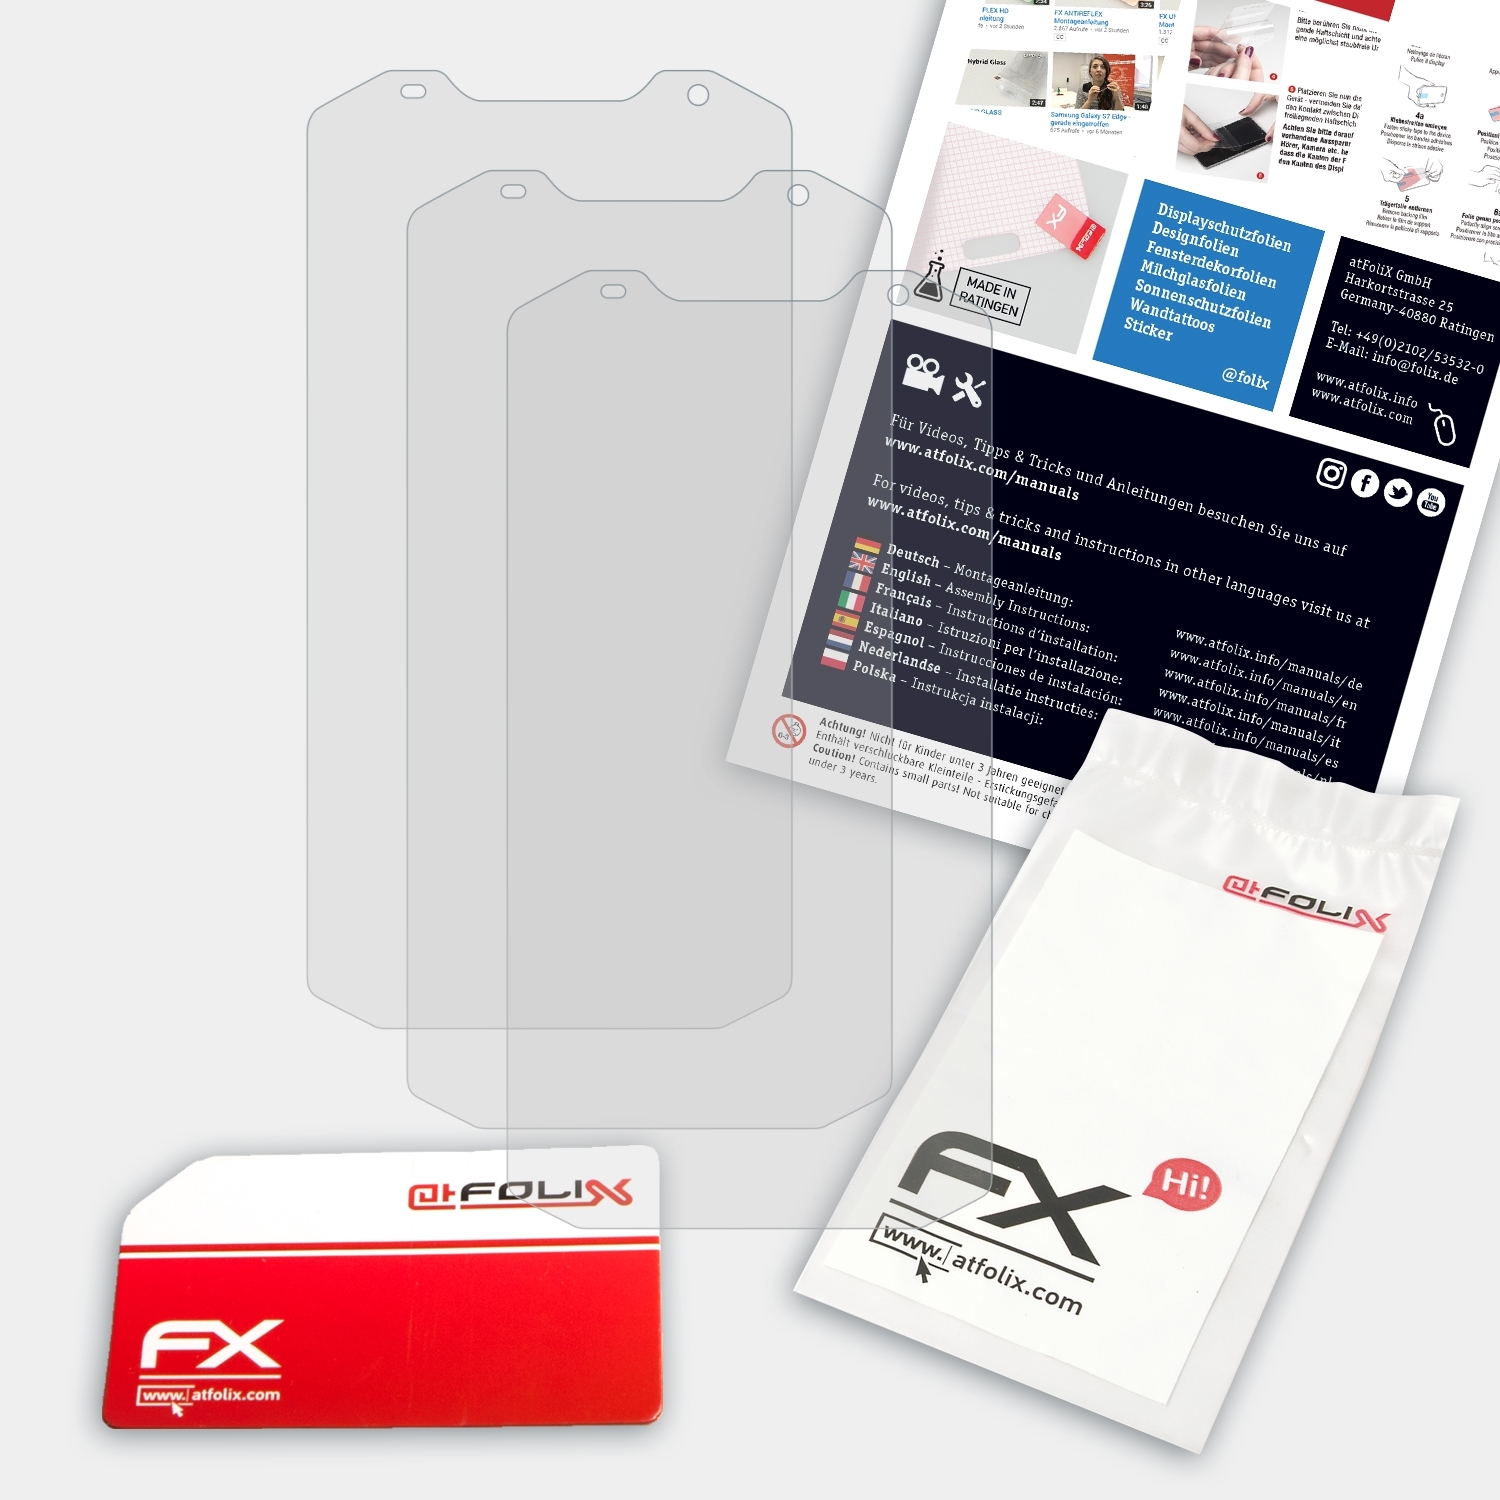 Displayschutz(für MFOX 3x A10) ATFOLIX FX-Antireflex